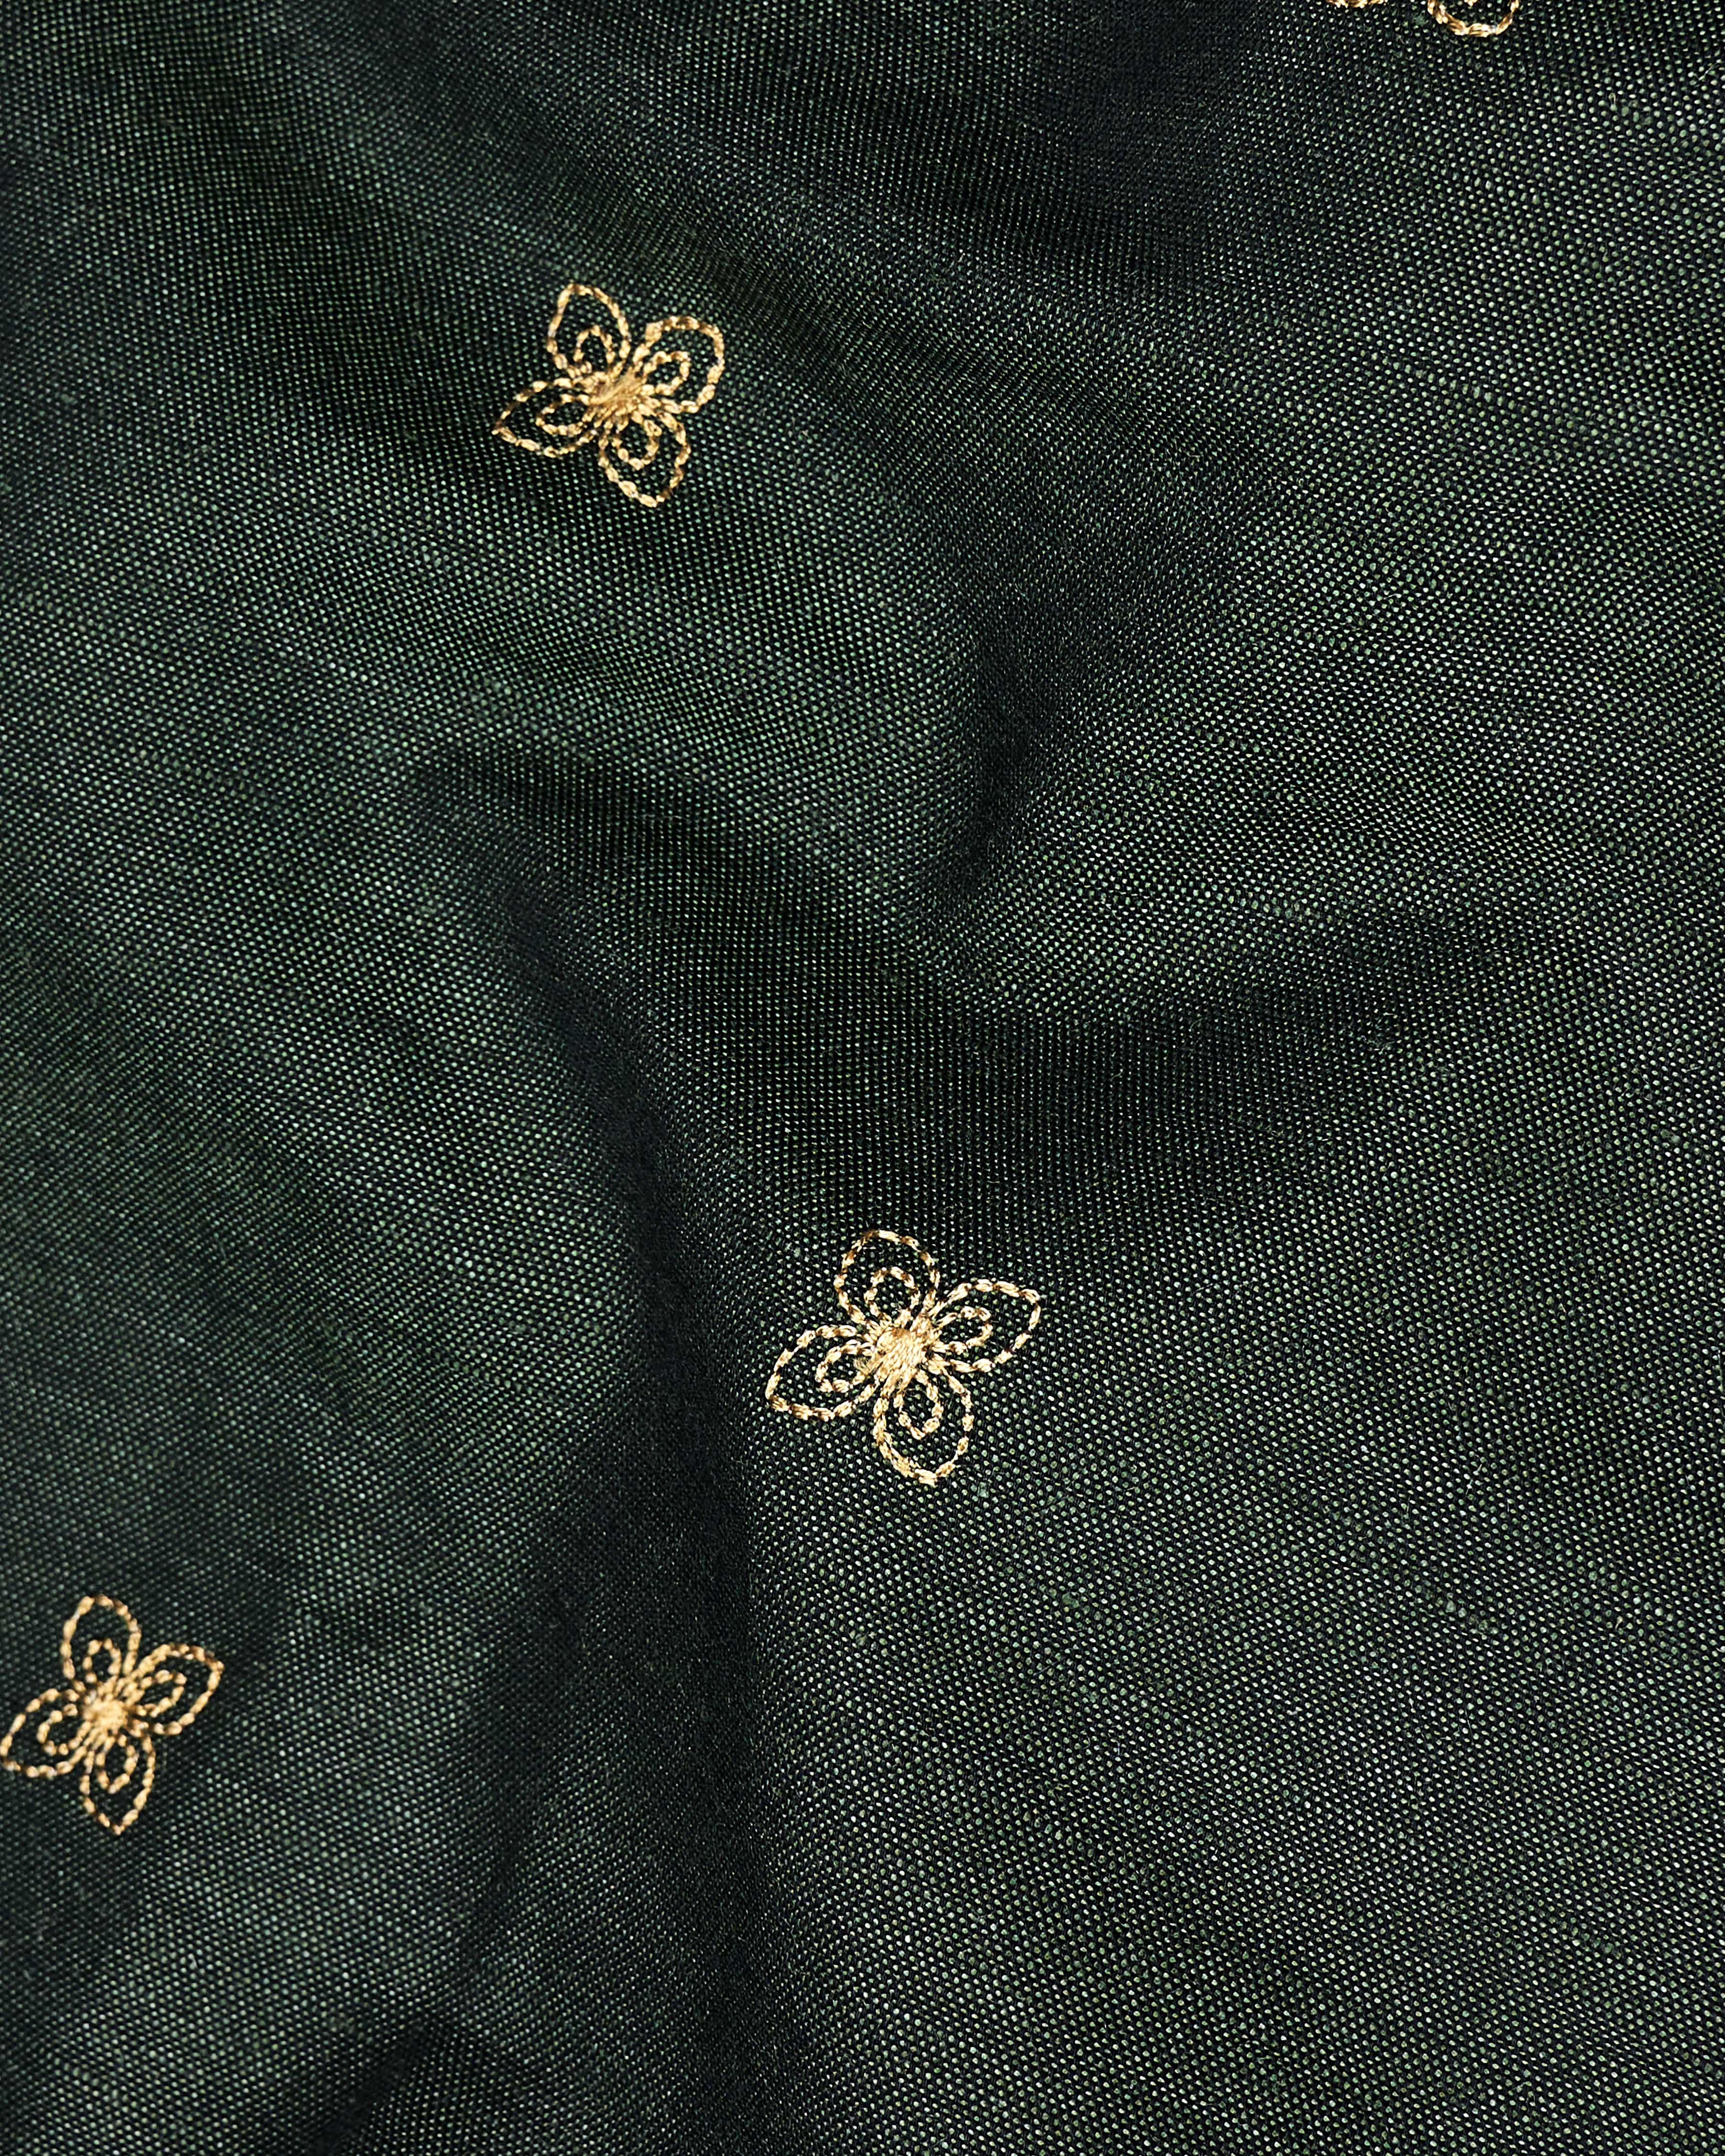 Mine Shaft Green Embroidered Luxurious Linen Shirt